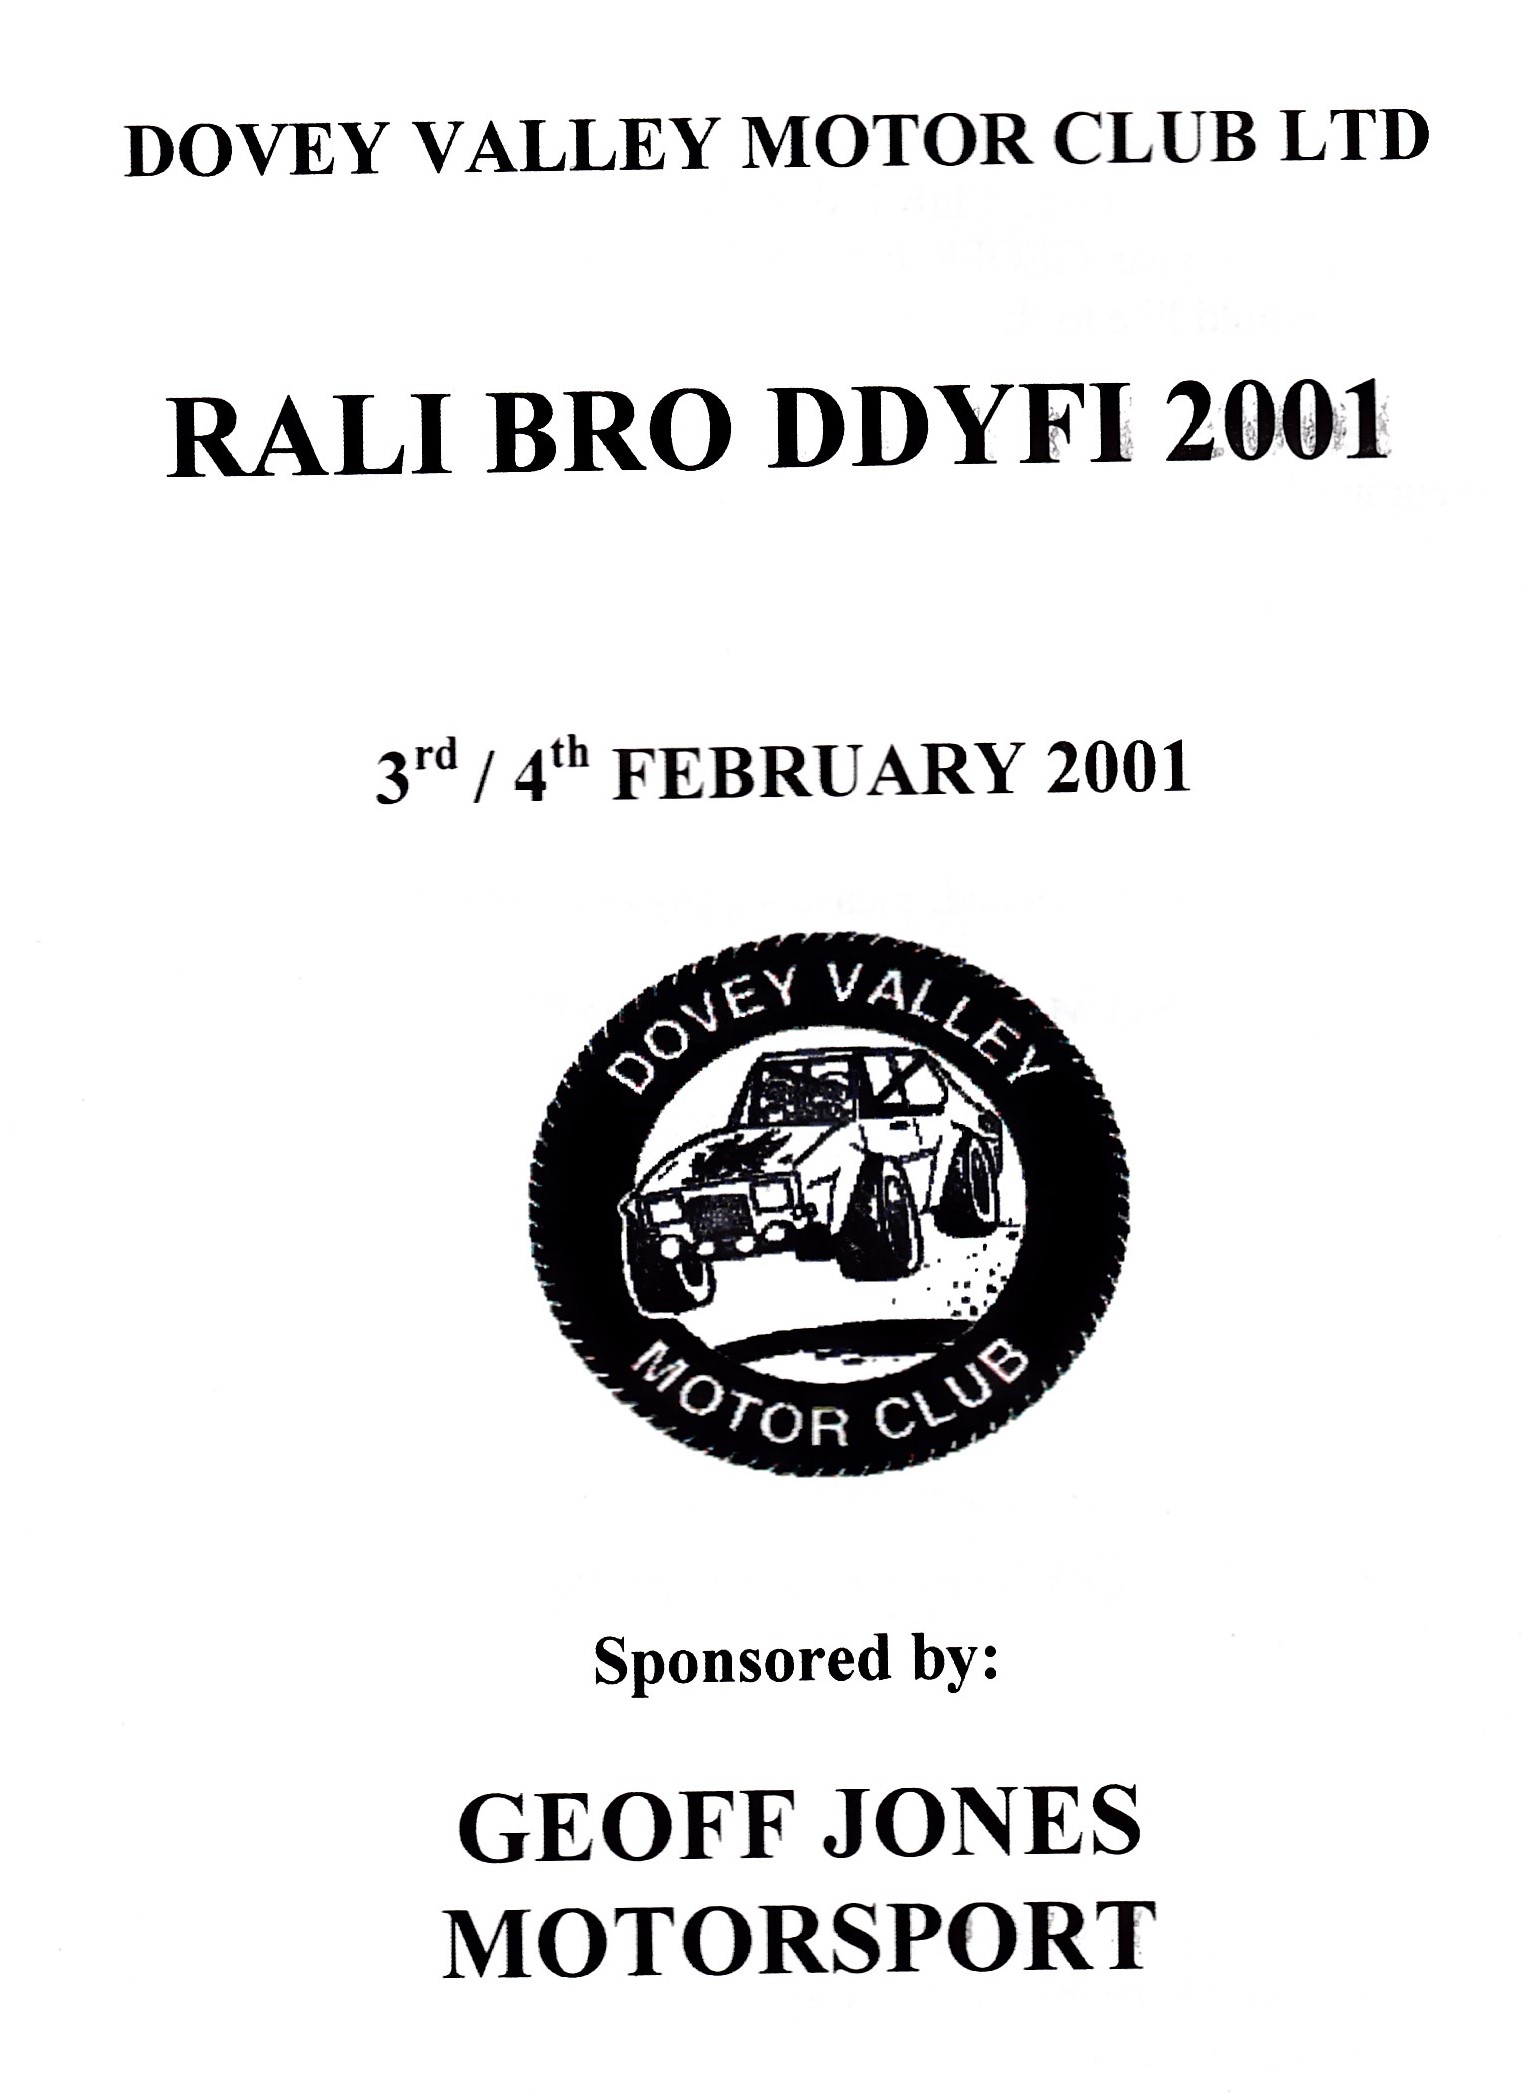 Rali Bro Ddyfi 2001